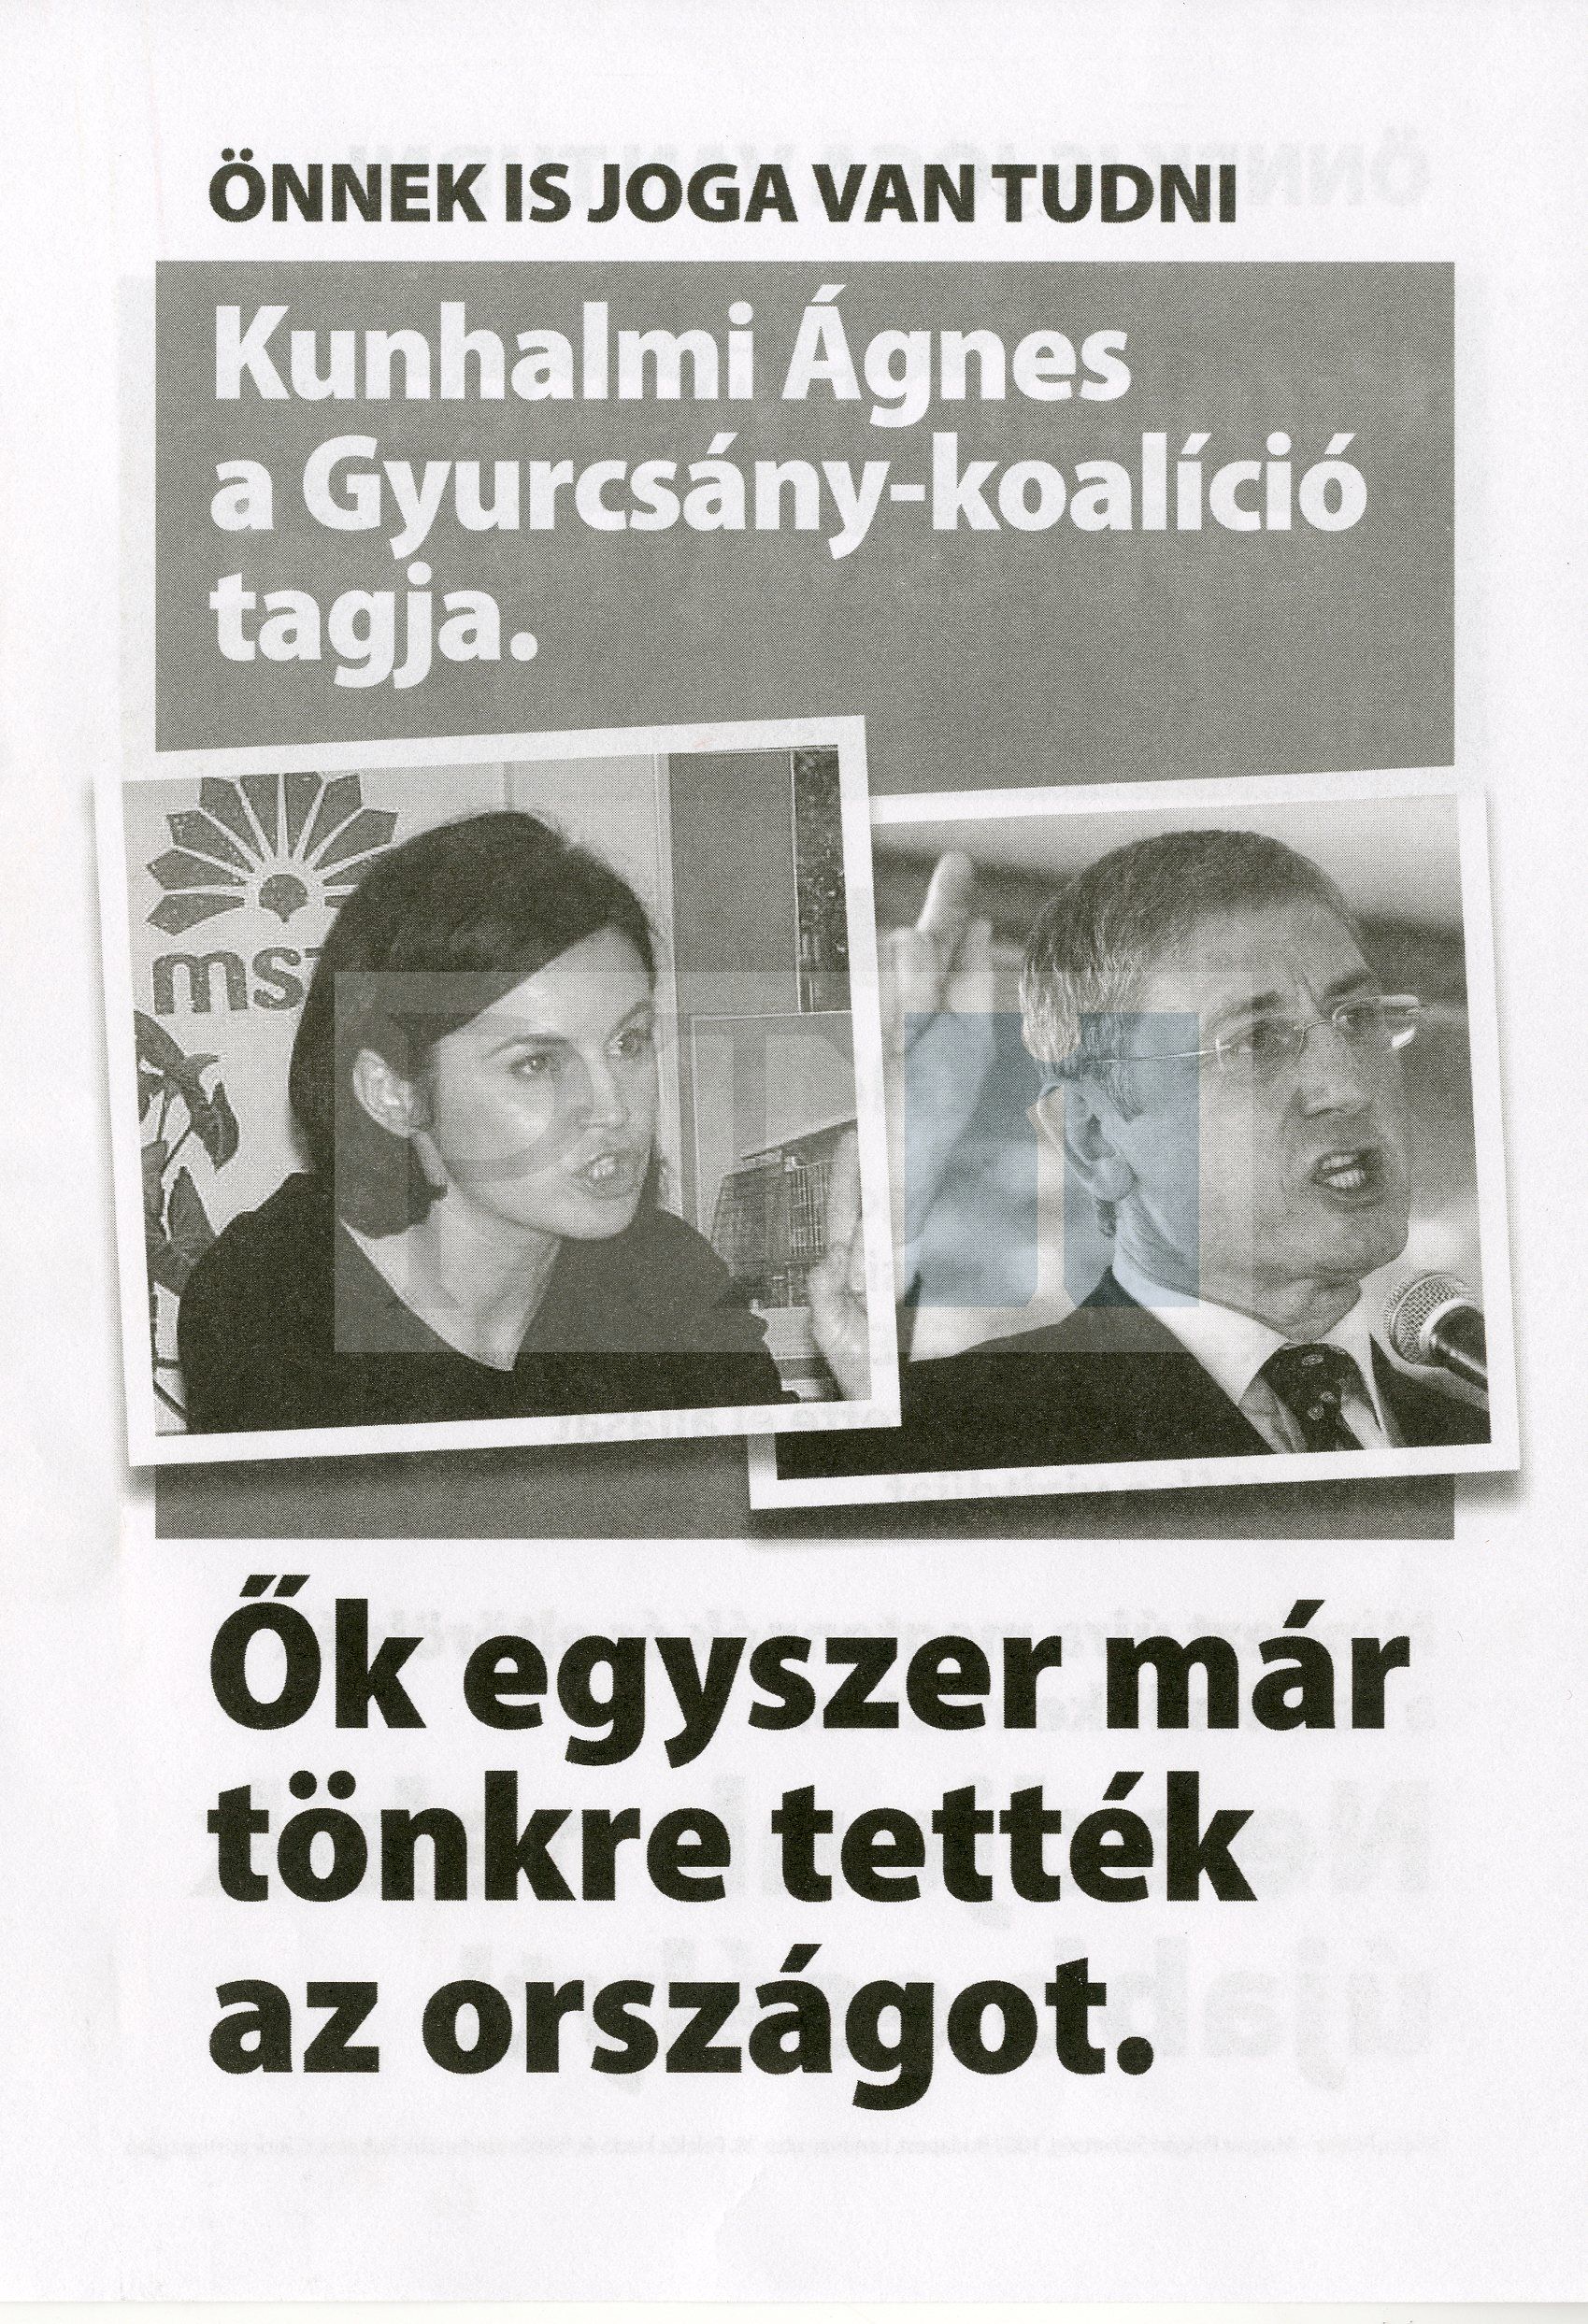 fidesz_anti-gyurcsany_2014.jpg